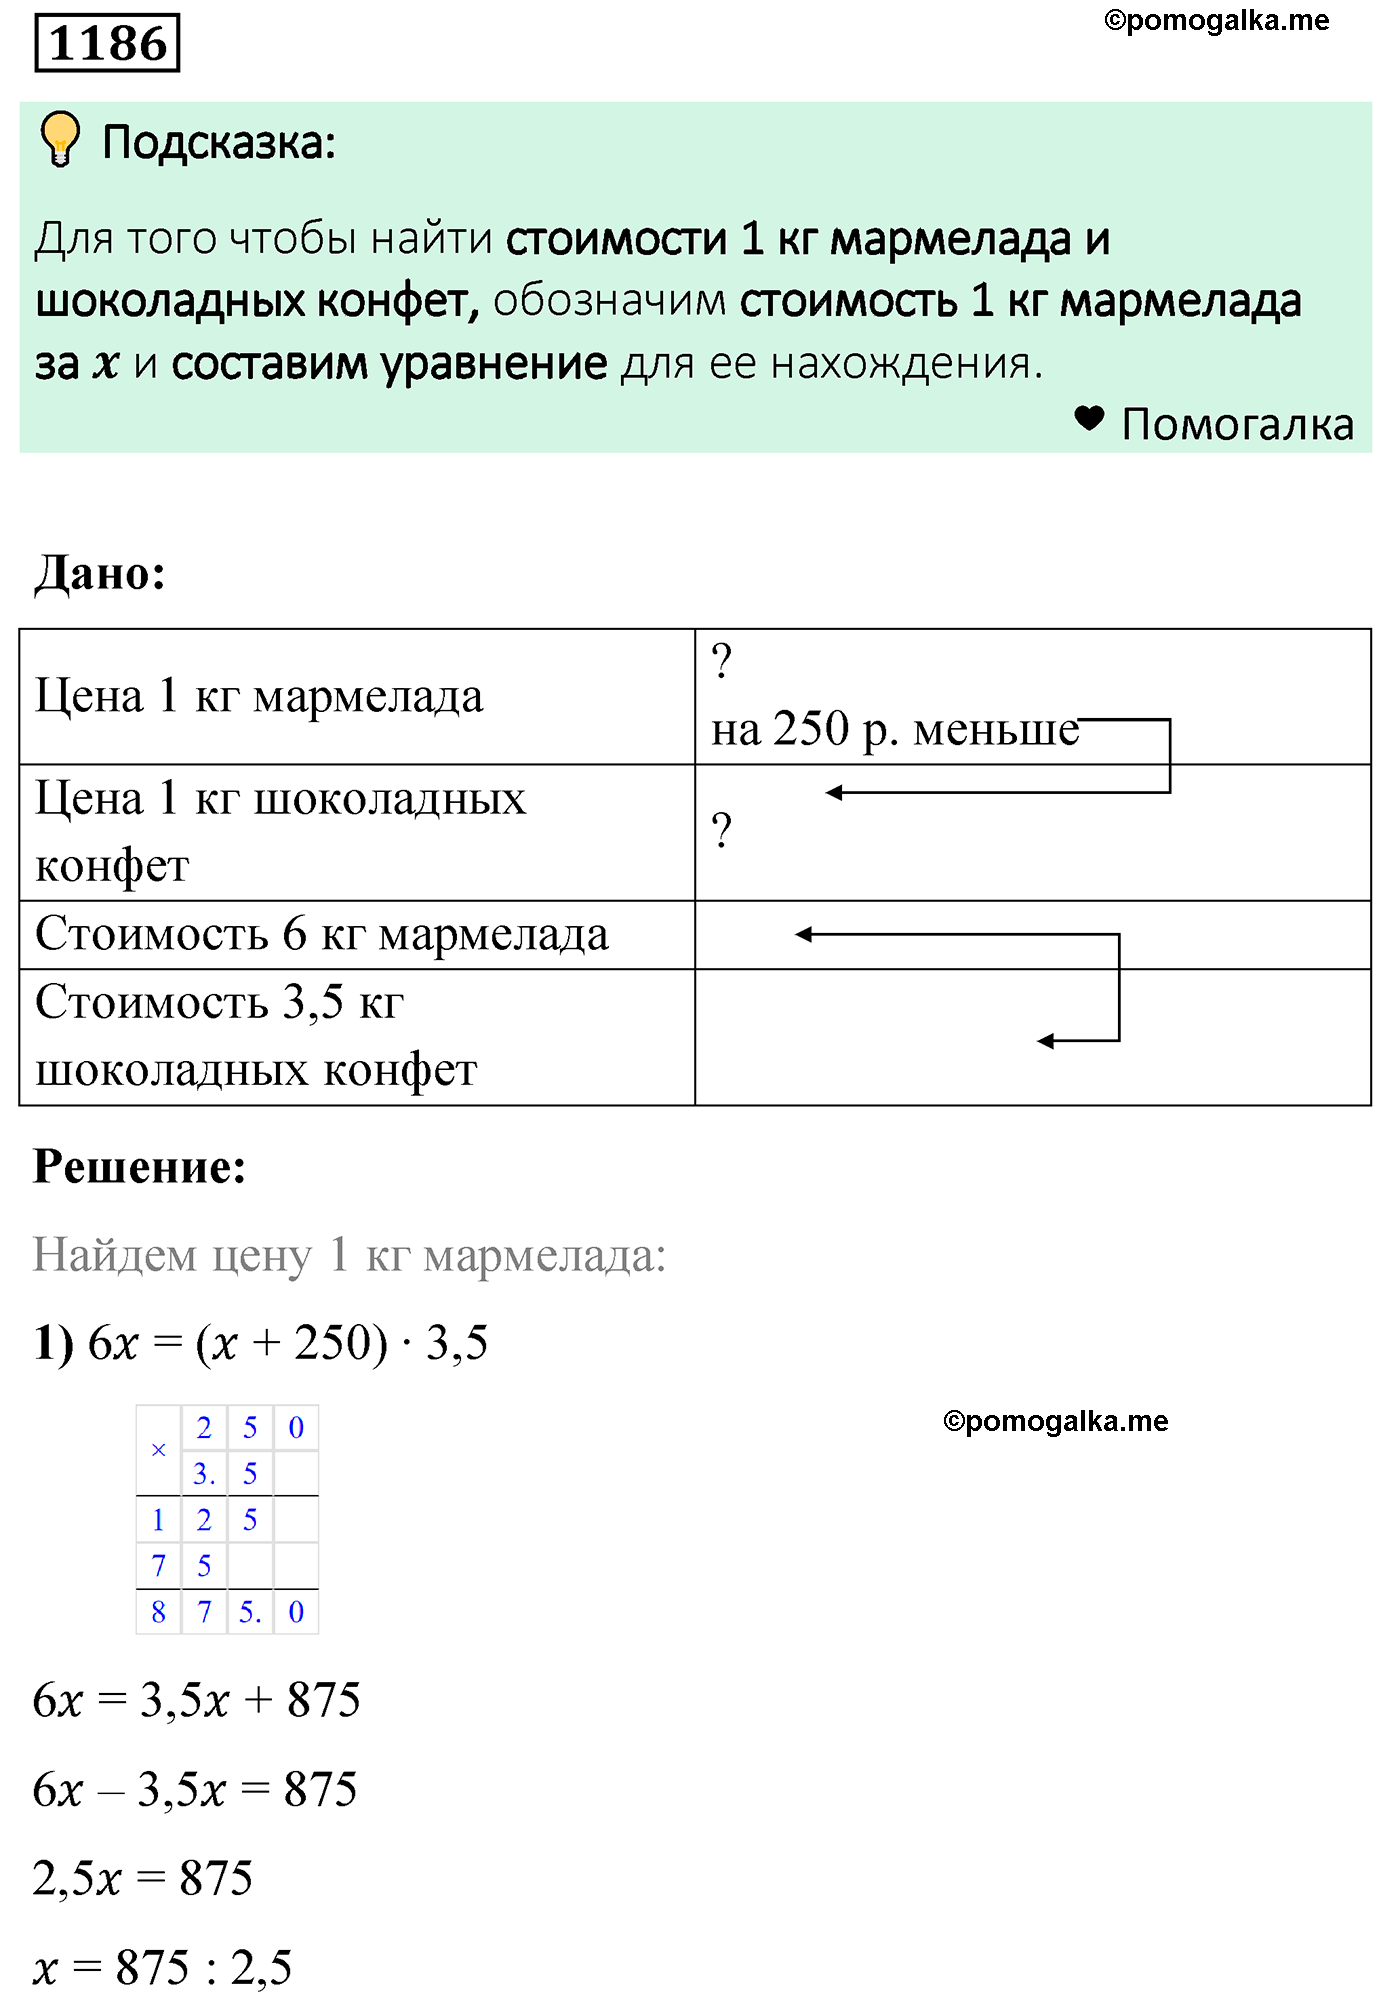 задача 1186 по математике 6 класс Мерзляк 2022 год